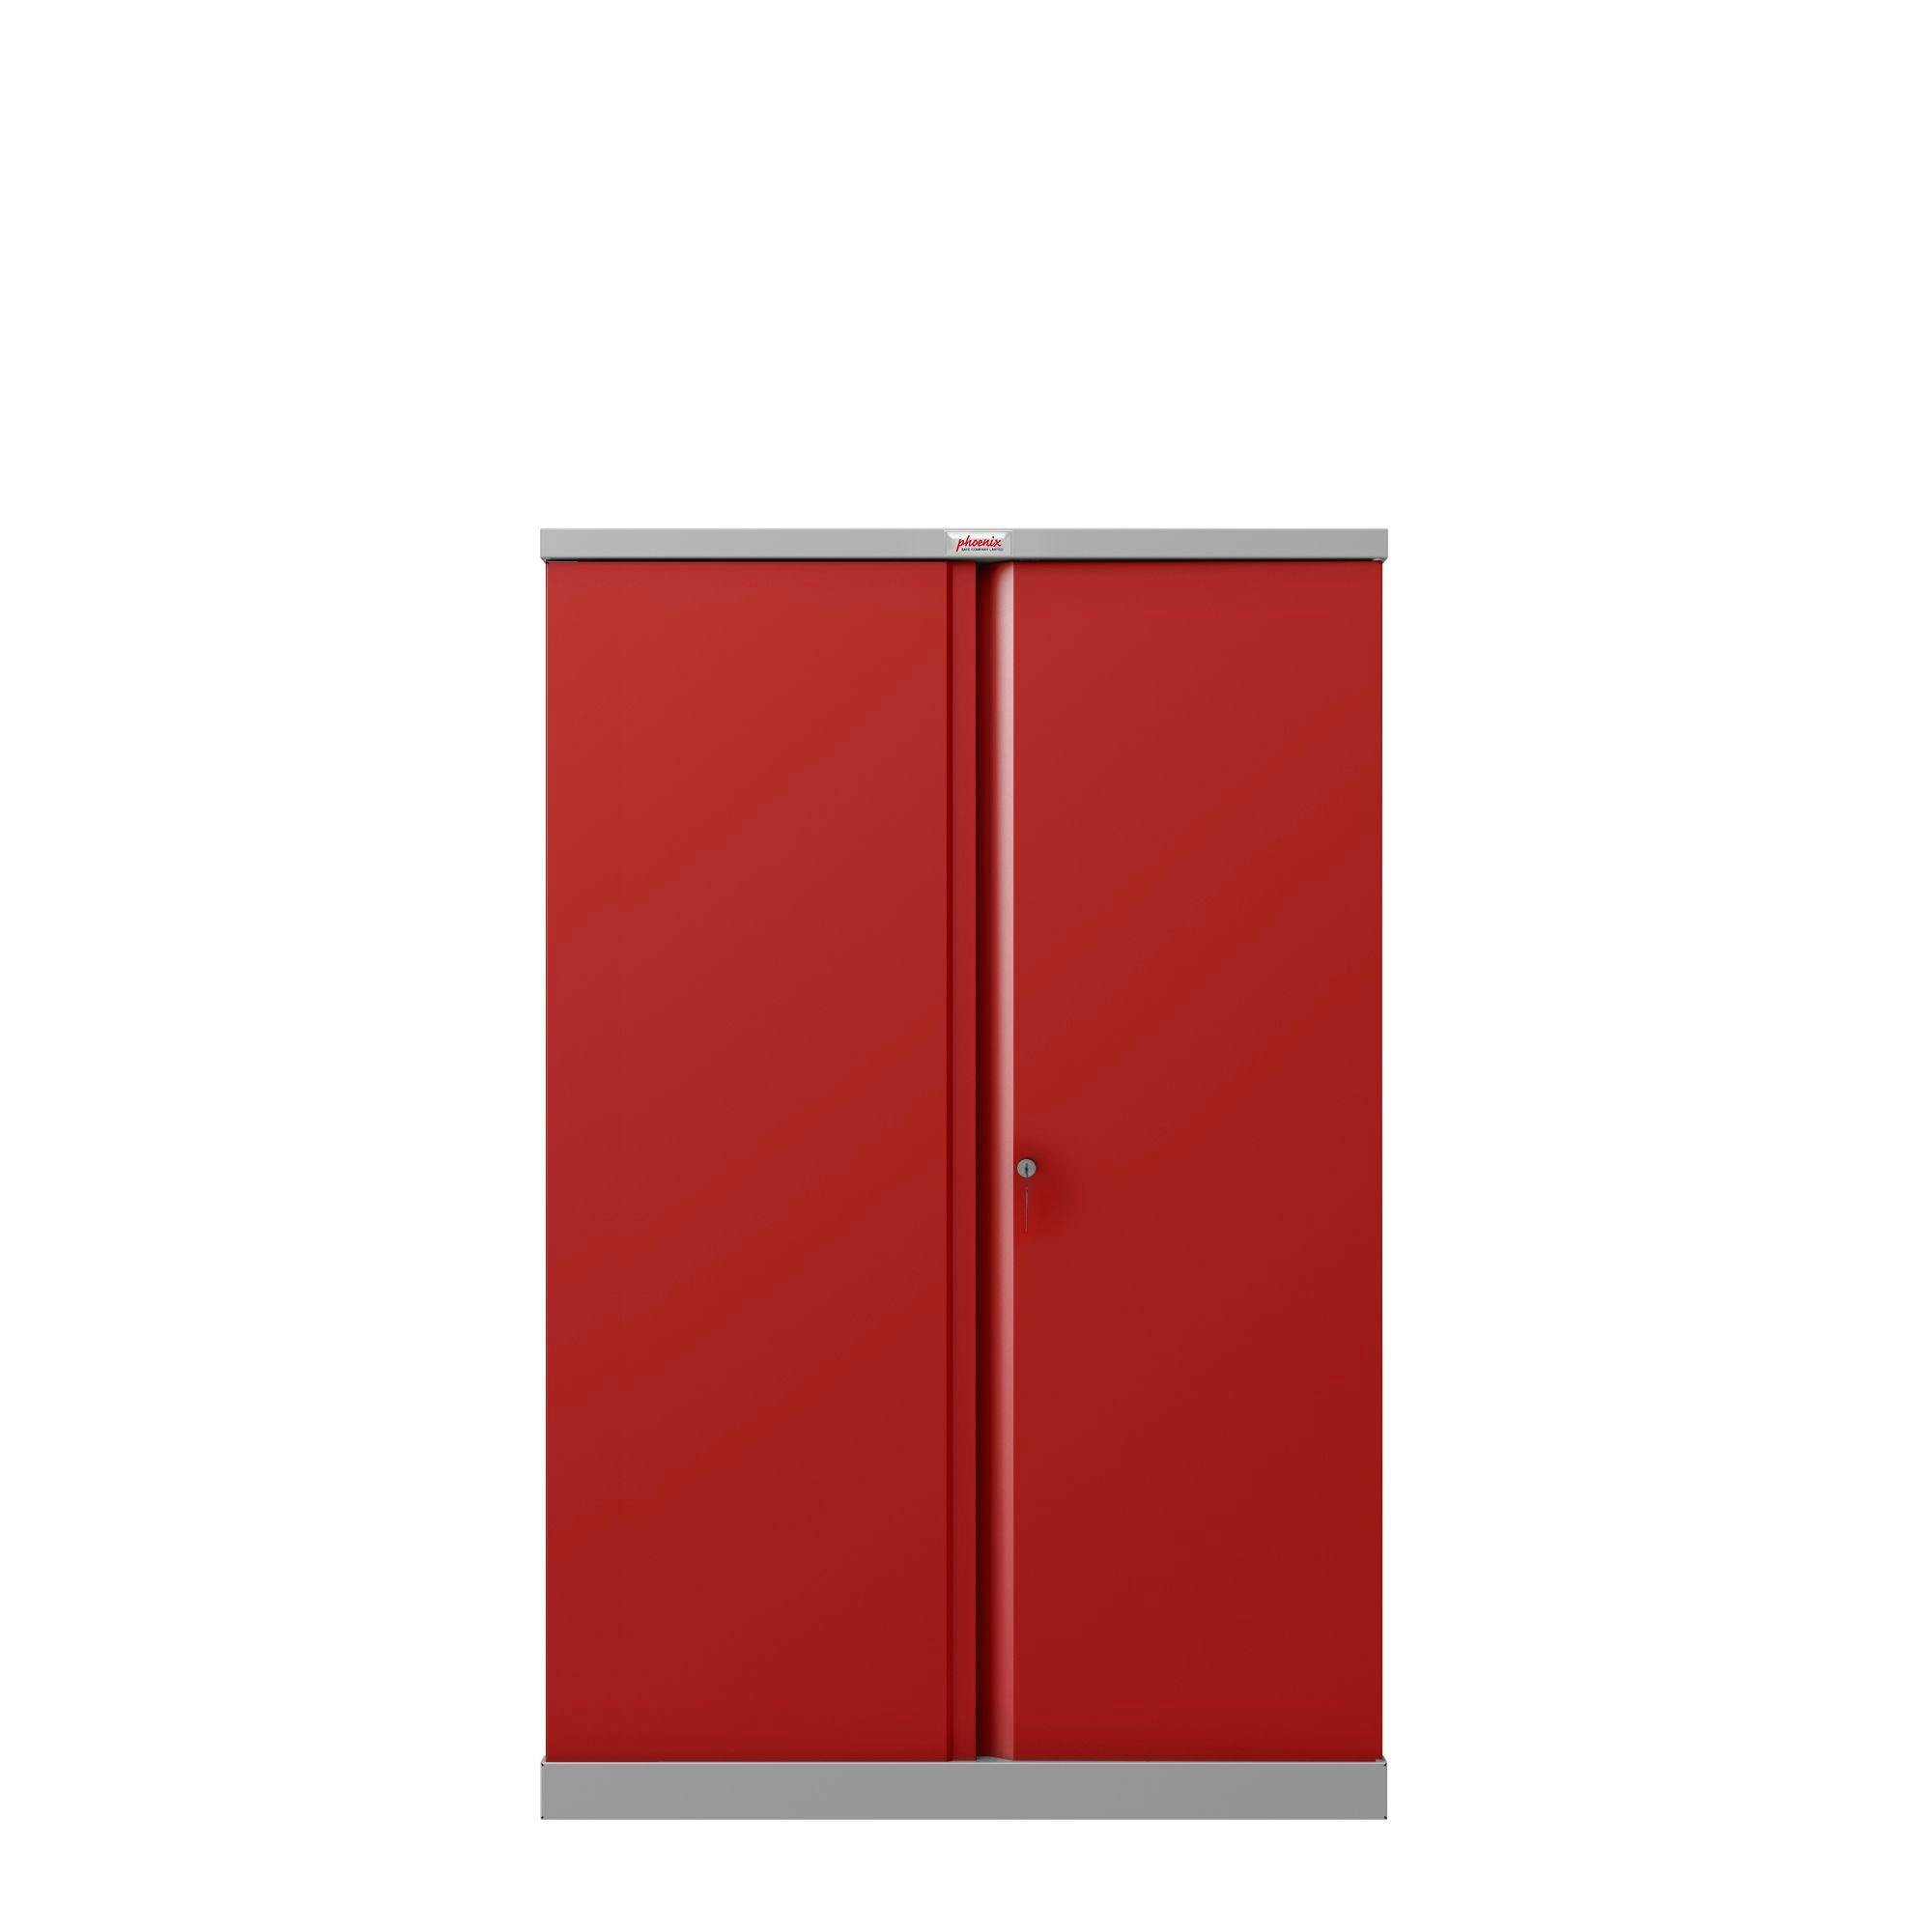 Der Phoenix Aktenschrank SCL1491GRK aus Stahl mit 2 Türen und 3 Regalen,  grauer Korpus und rote Türen mit Schlüsselschloss | METRO Marktplatz